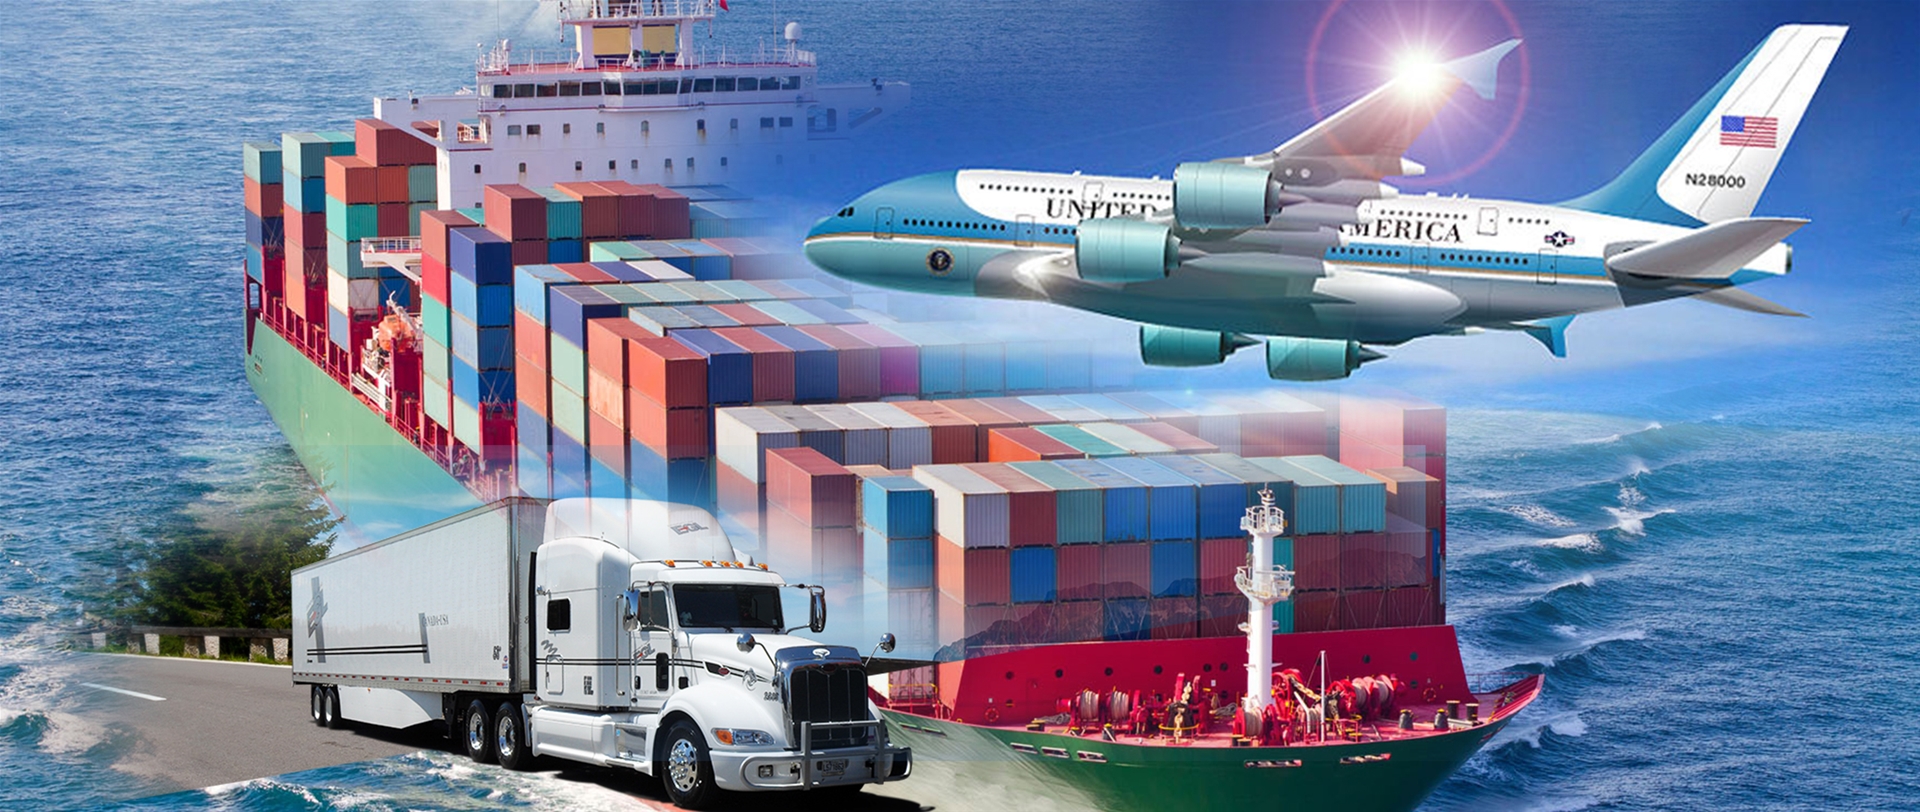 Bảo hiểm vận chuyển hàng hóa nội địa mang đến nhiều lợi ích quan trọng. 